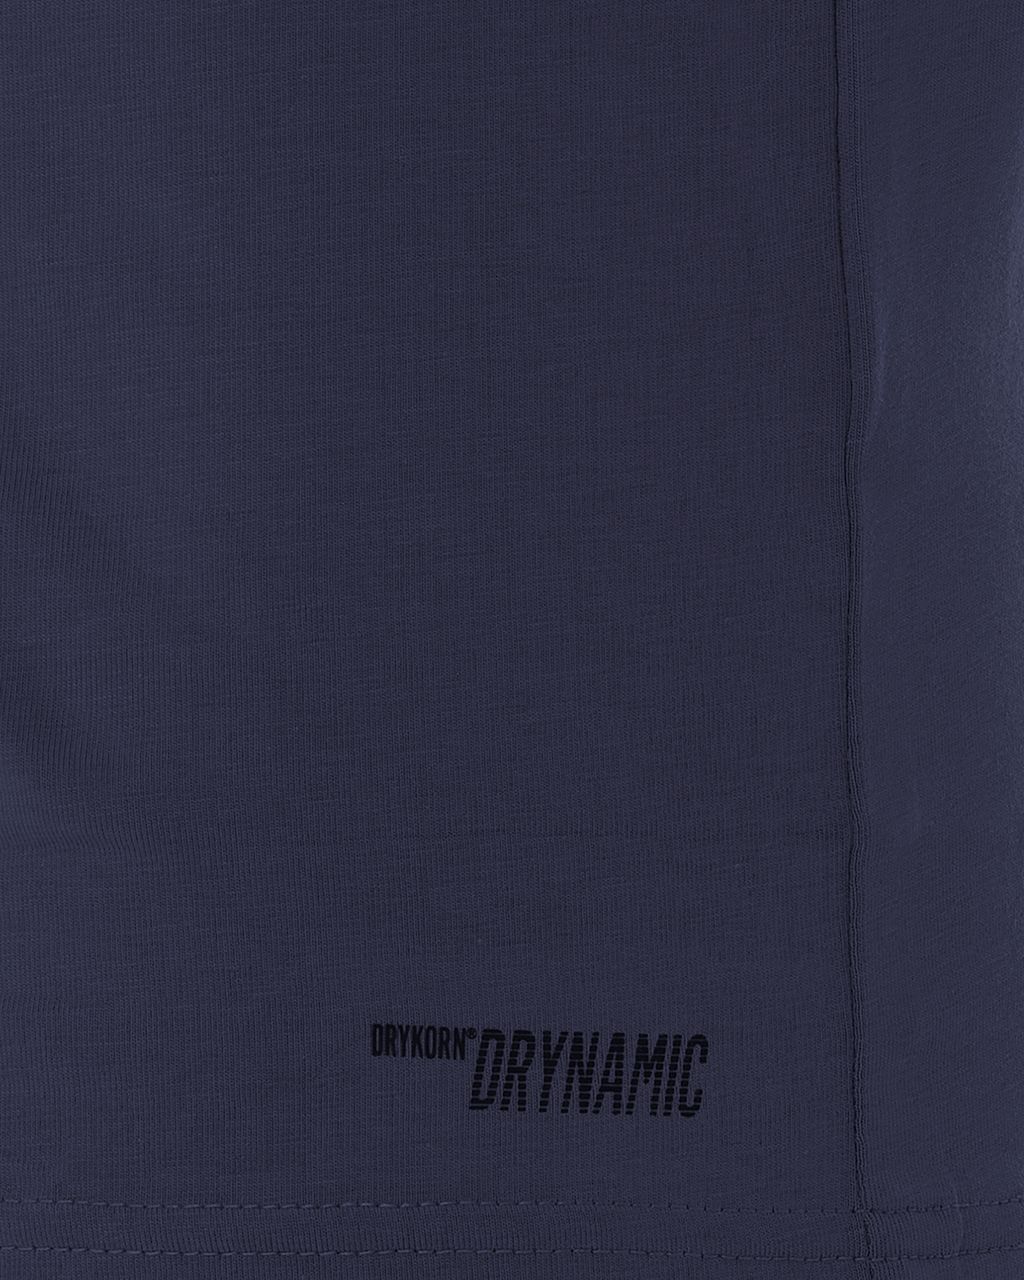 Drykorn T-shirt KM Donkerblauw 058270-001-L